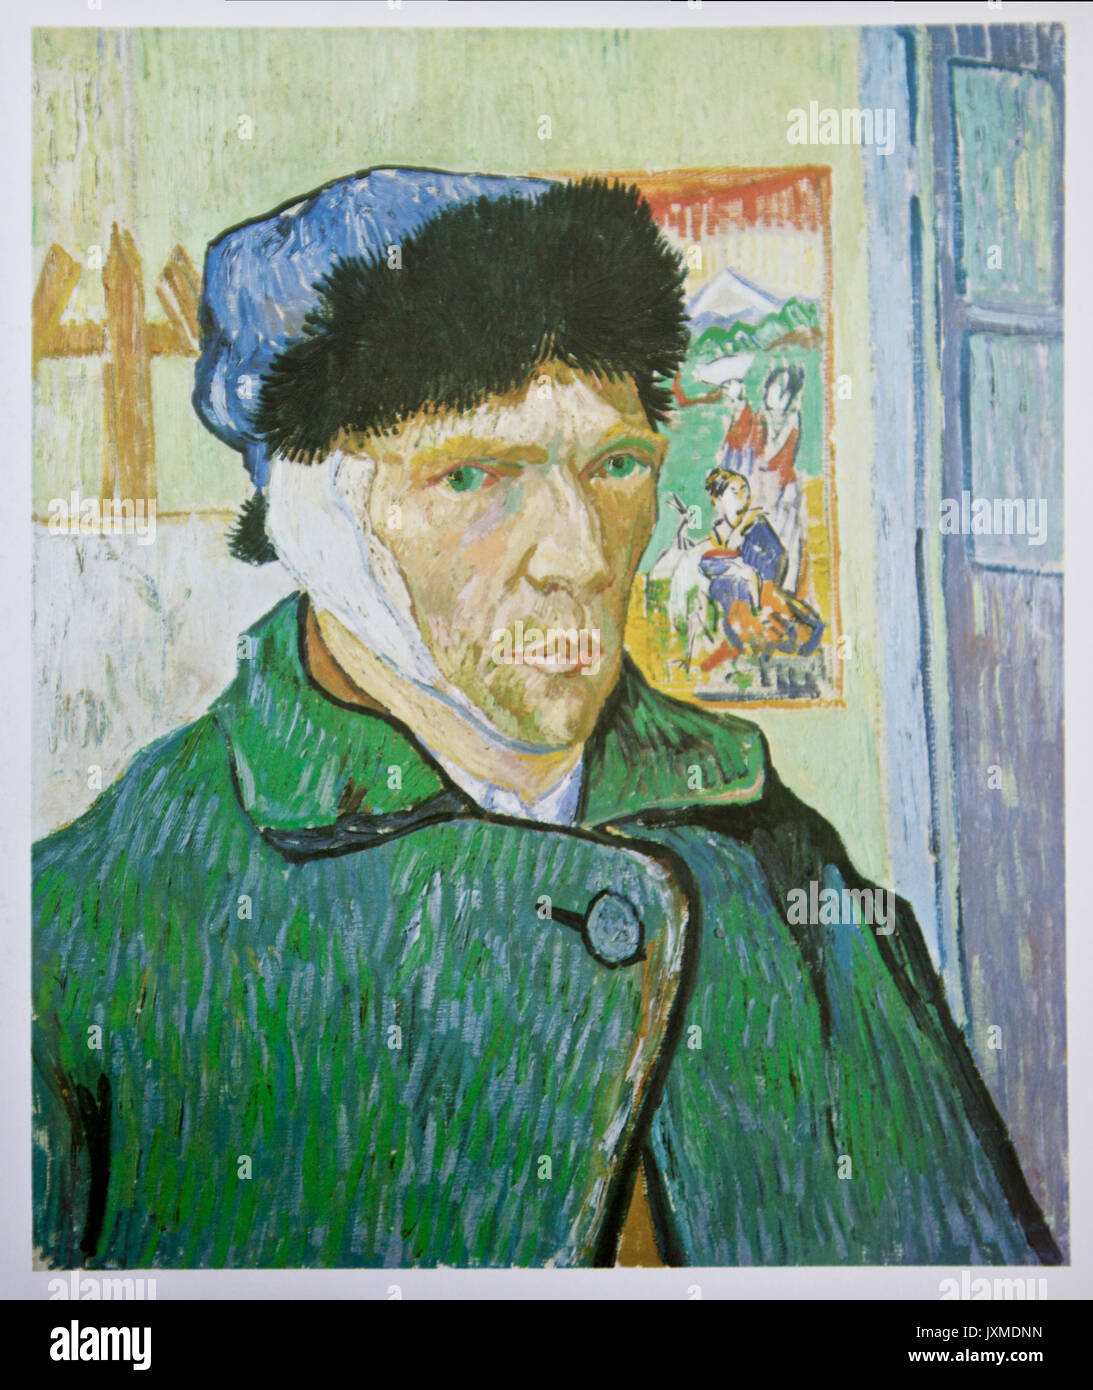 Vincent van Gogh self portrait avec un bandage 1889 Banque D'Images